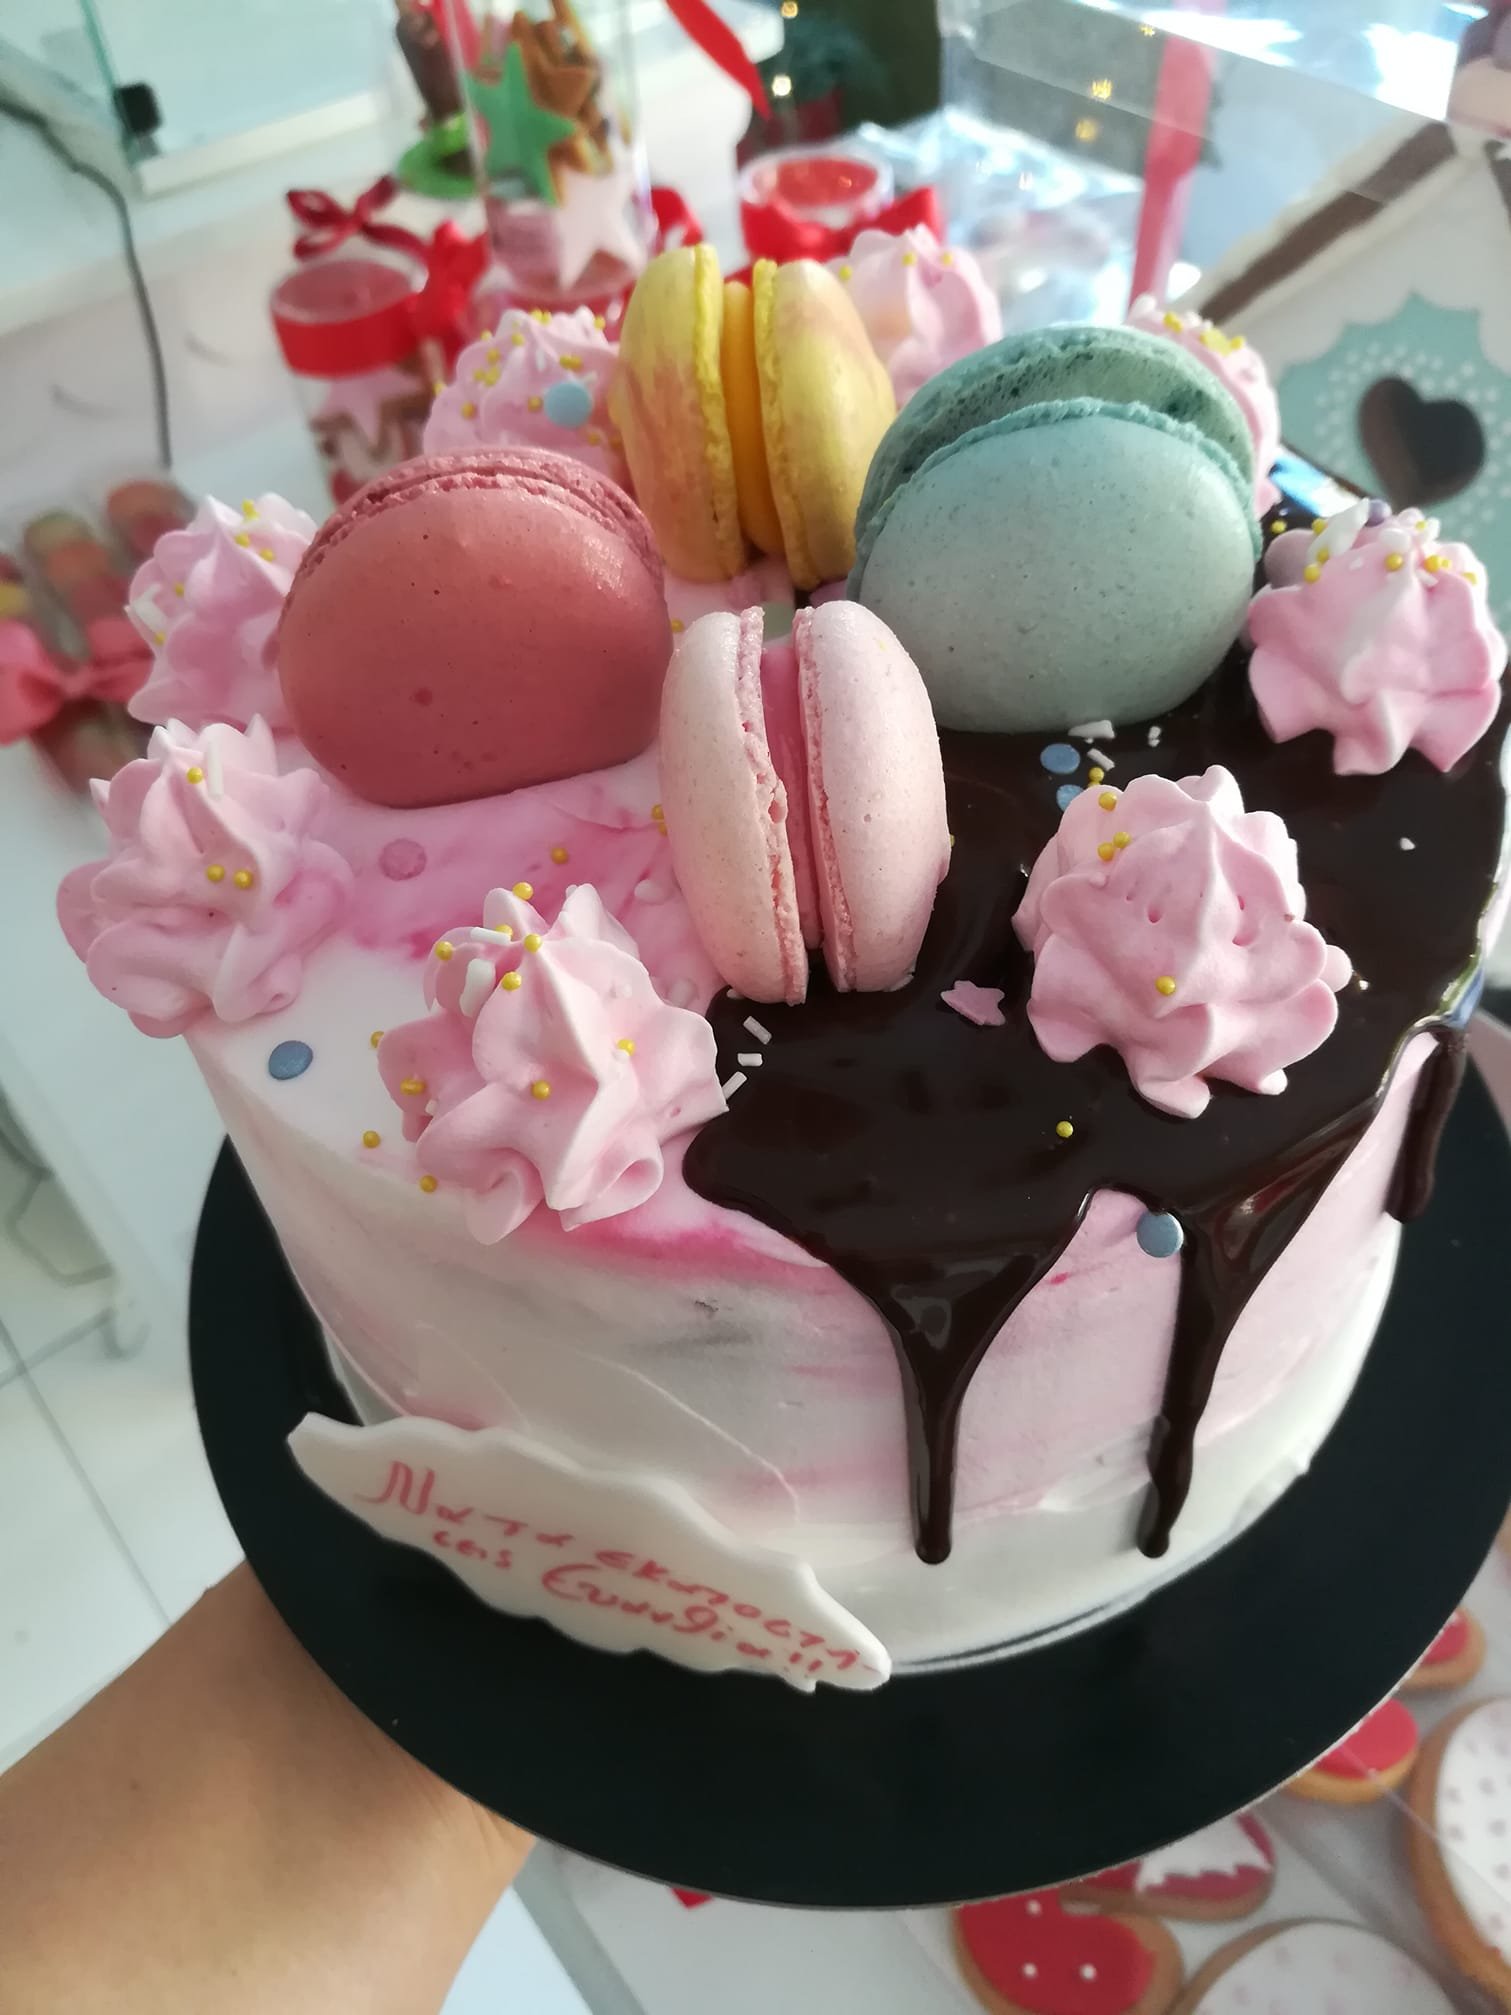 τούρτα χωρίς ζαχαρόπαστα σοκολάτα και maccaron themed cake, ζαχαροπλαστείο Καλαμάτα madame charlotte, birthday wedding party cakes 2d 3d kalamata